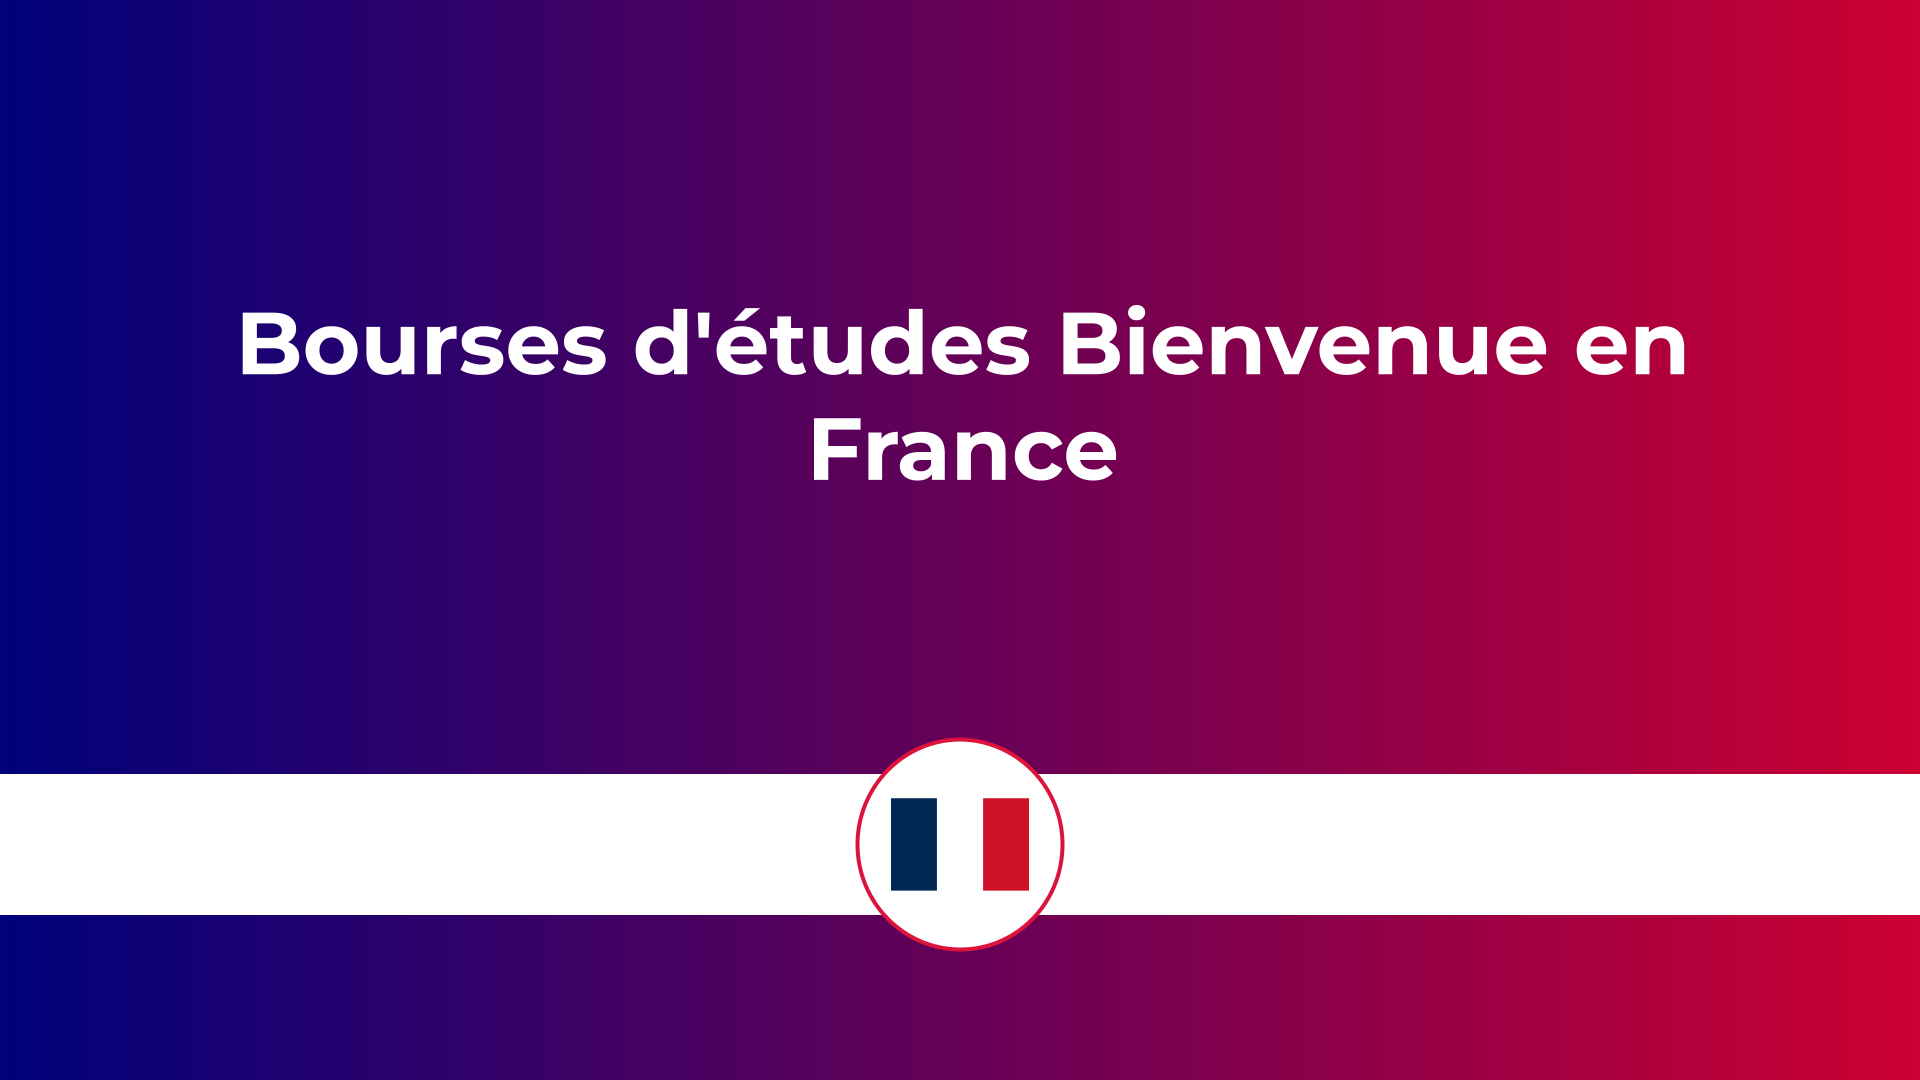 Bourses d'études Bienvenue en France